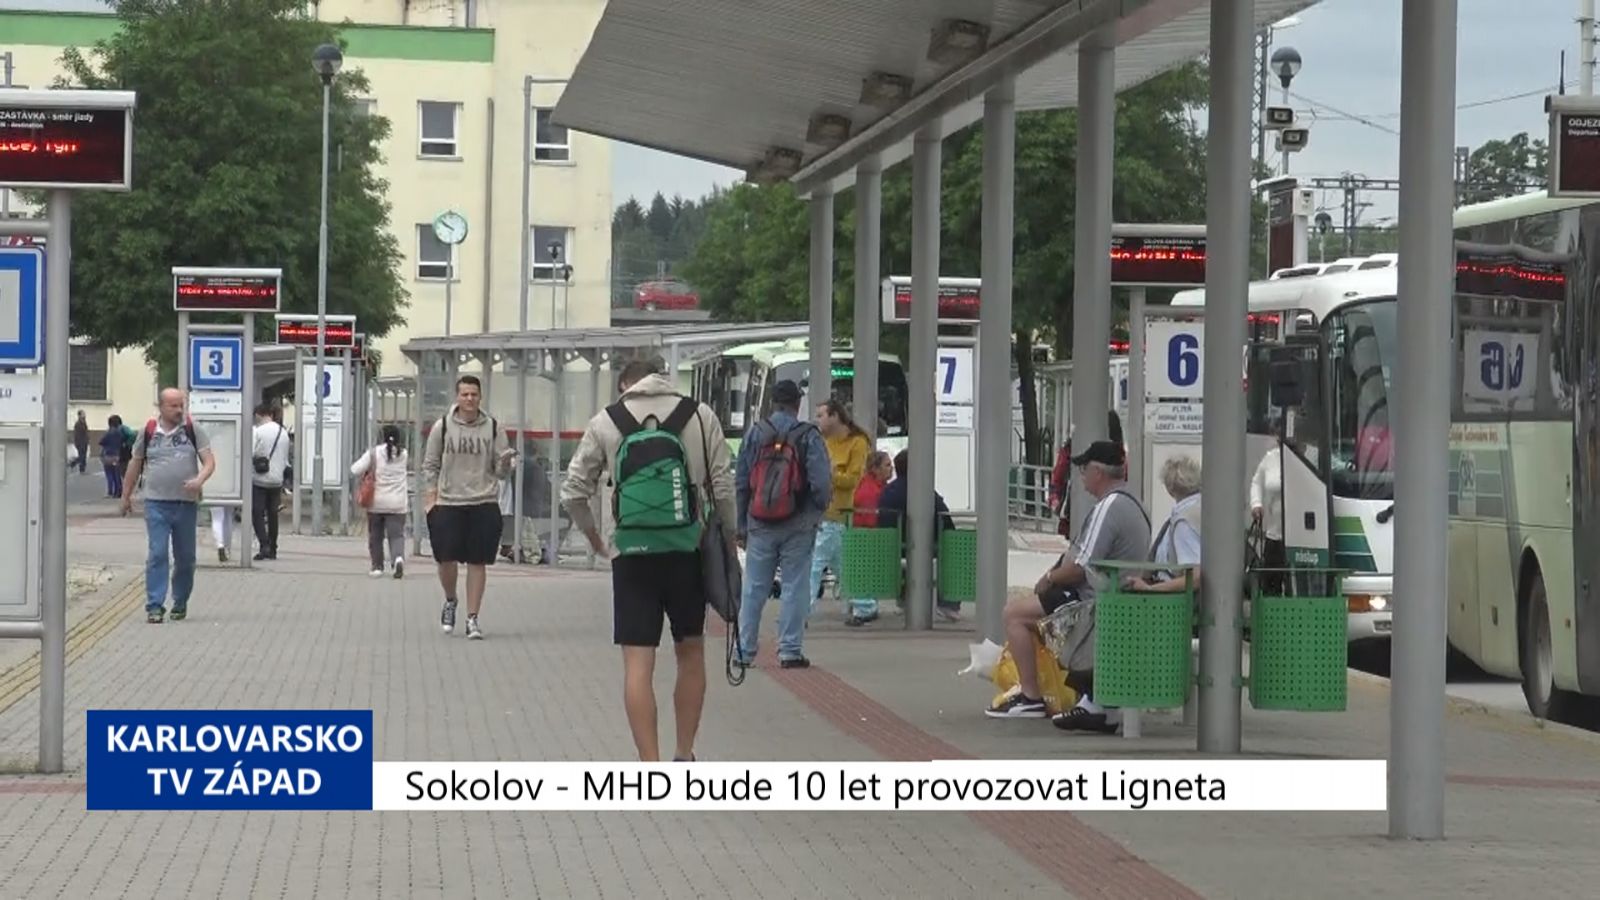 Sokolov: MHD bude 10 let provozovat společnost Ligneta (TV Západ)